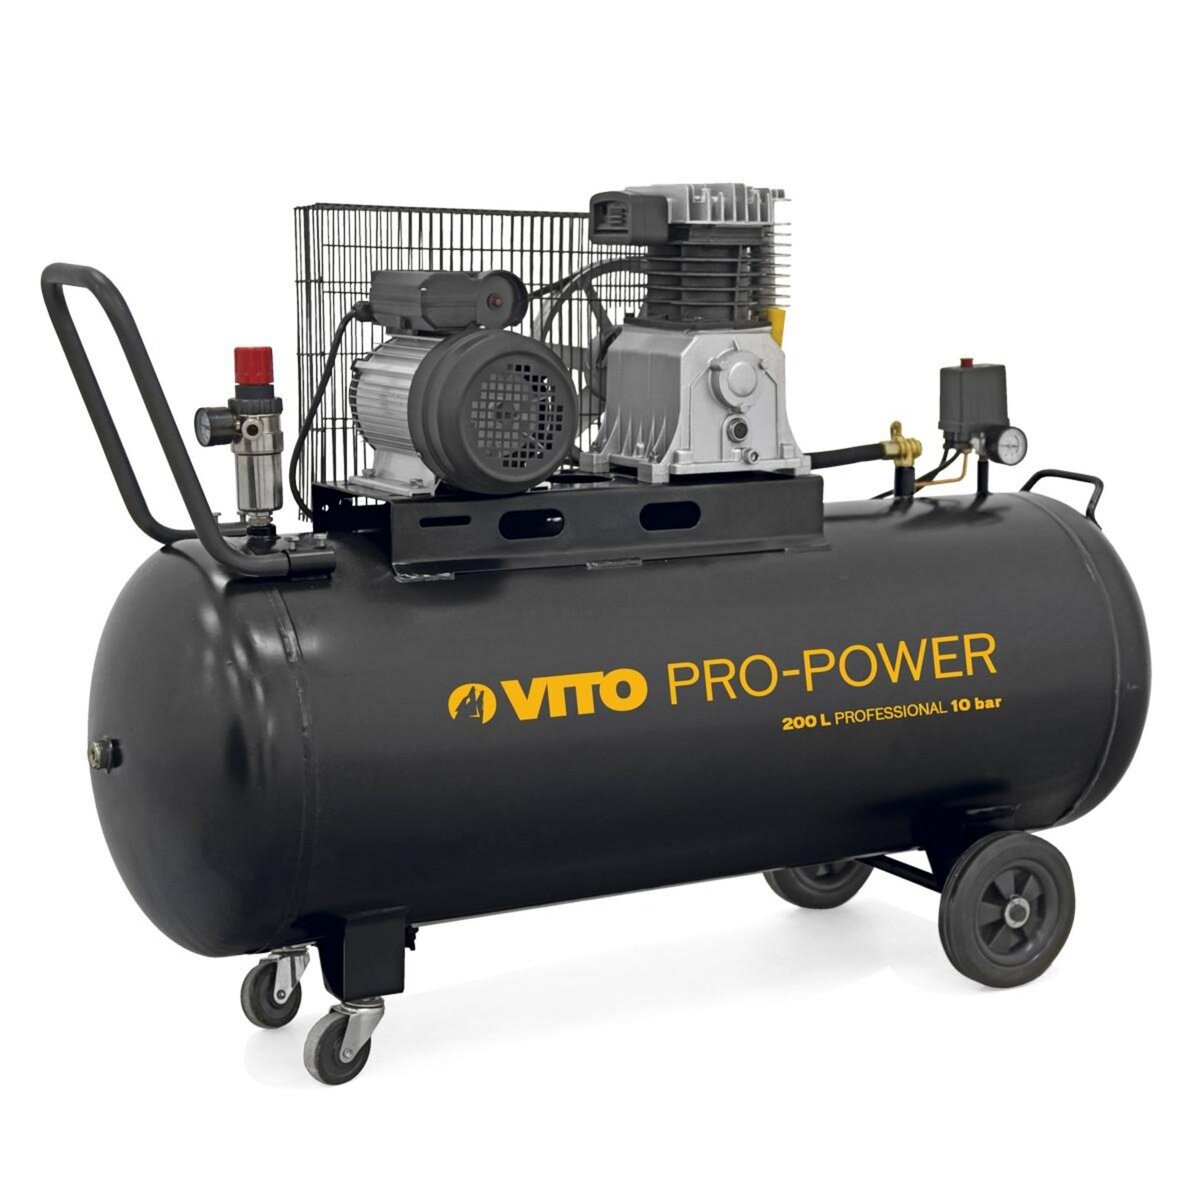 VITO Pro-Power Compresseur à Courroie 200L 10 bar 4 CV 3 kW VITO Professionnel 2800 Tr/min AIR 400 L/min